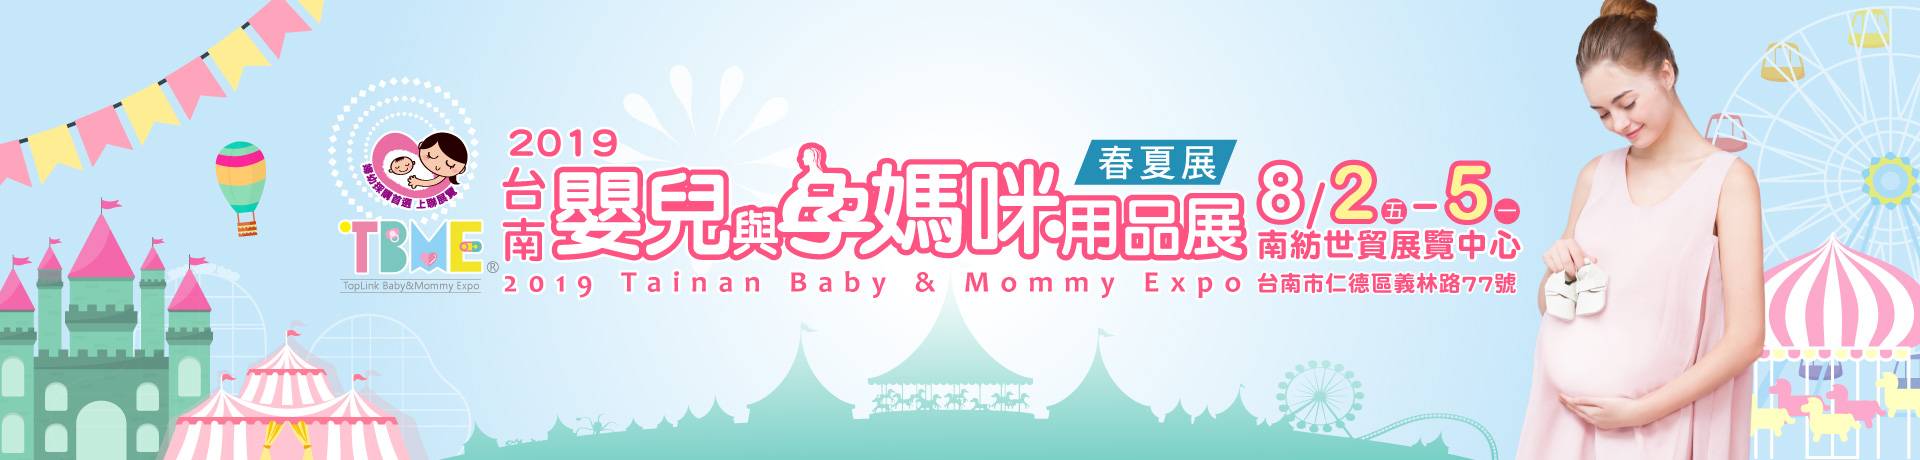 2019台南嬰兒與孕媽咪用品展暨兒童玩具博覽會-春夏季